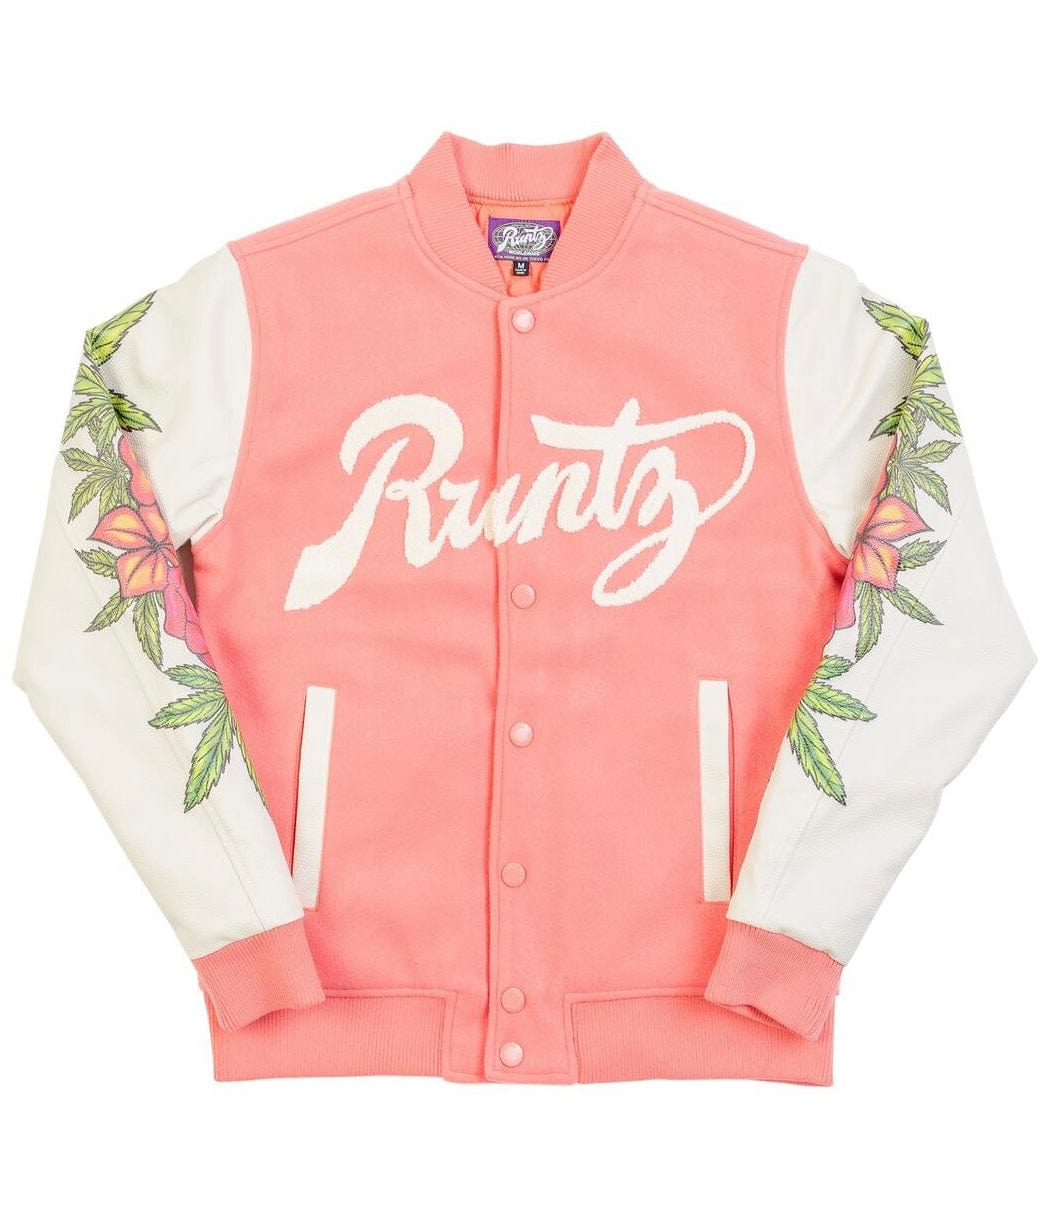 Mastermind315 Pink Floral runtz  varsity jacket